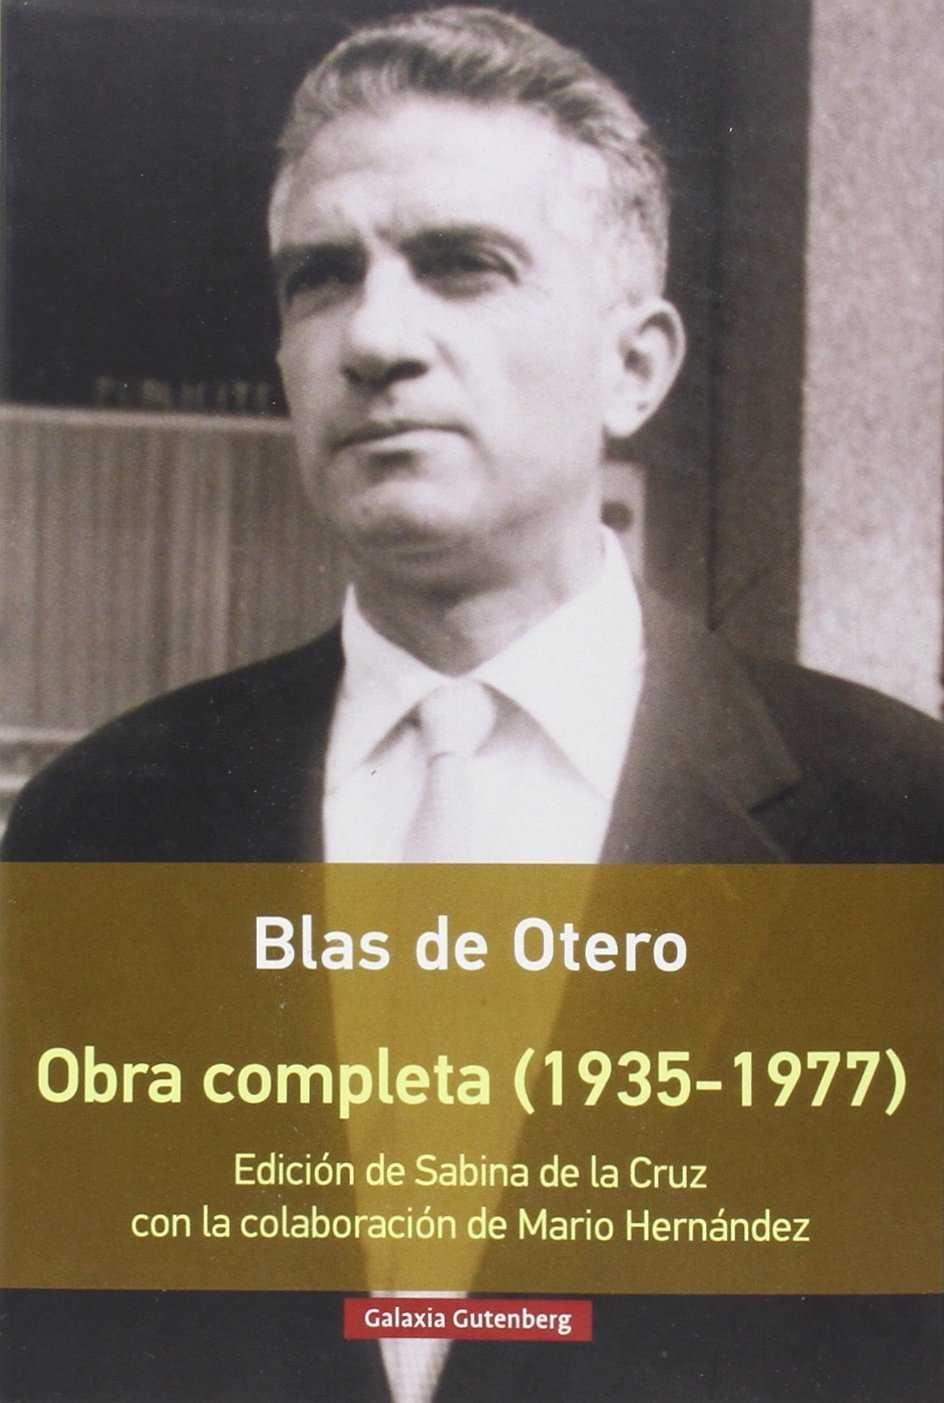 BLAS DE OTERO. OBRA COMPLETA (1935-1977)